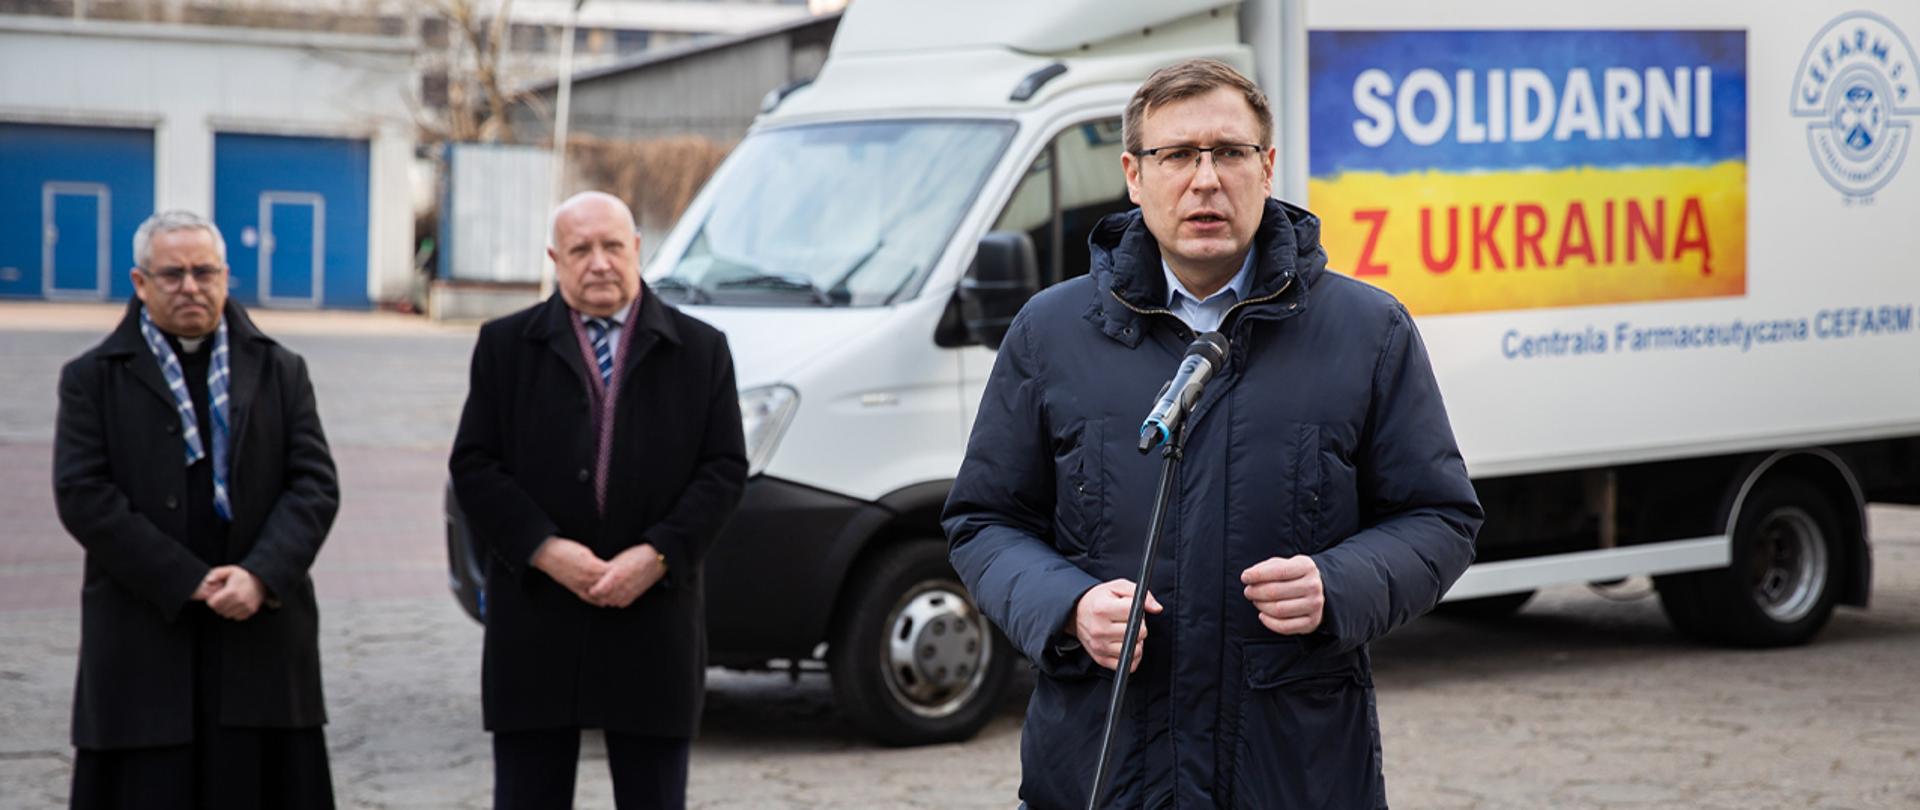 Wiceminister Maciej Małecki stoi przed mikrofonem. W tle biała ciężarówka z darami dla Ukrainy. Na ciężarówce żółto niebieska flaga z napisem "Solidarni z Ukrainą". Dodatkowo w tle stoi dwóch innych mężczyzn.